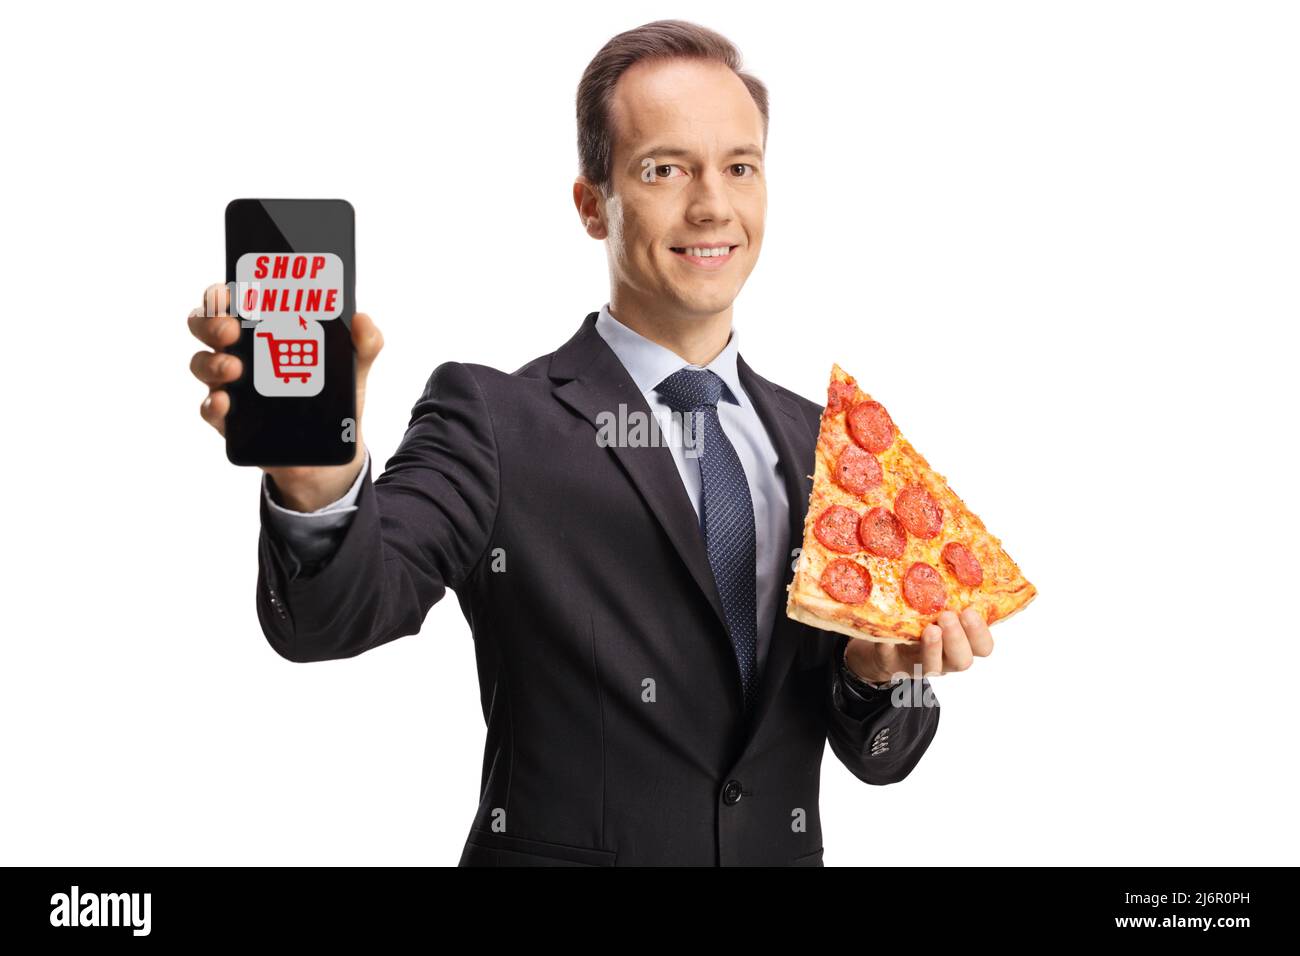 Homme d'affaires tenant une tranche de pizza et montrant un smartphone avec boutique de texte en ligne isolée sur fond blanc Banque D'Images